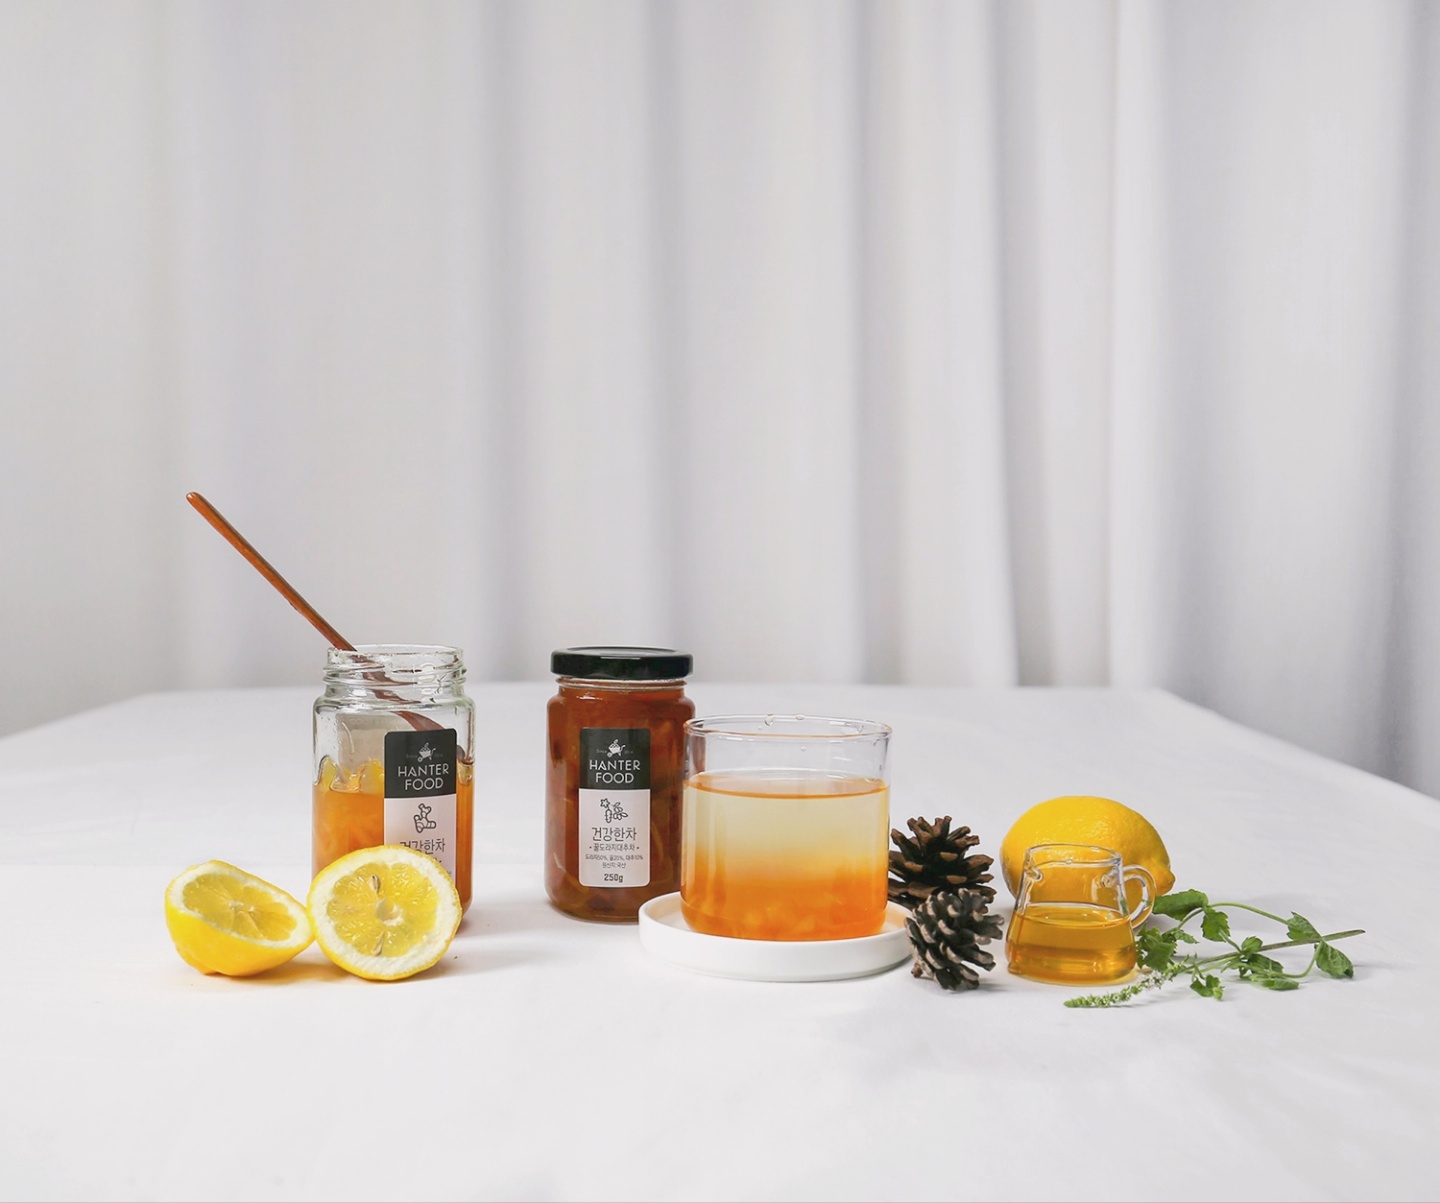 [한터식품]꿀건강차+잼 선물세트 1호(250g×3ea)(무방부제/홈카페/답례품/명절선물/고급선물)